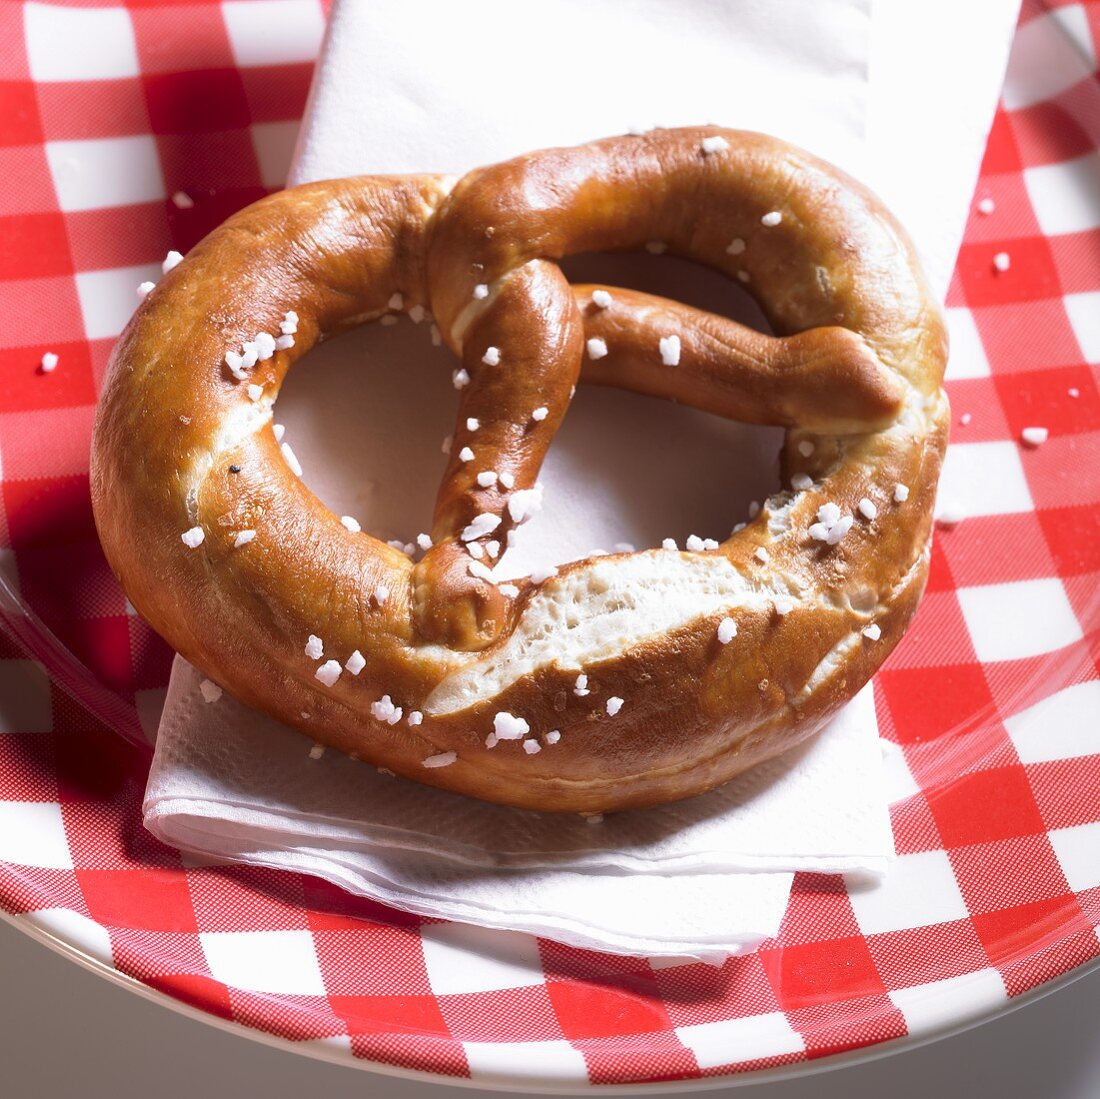 Lye pretzel on a plaid plate